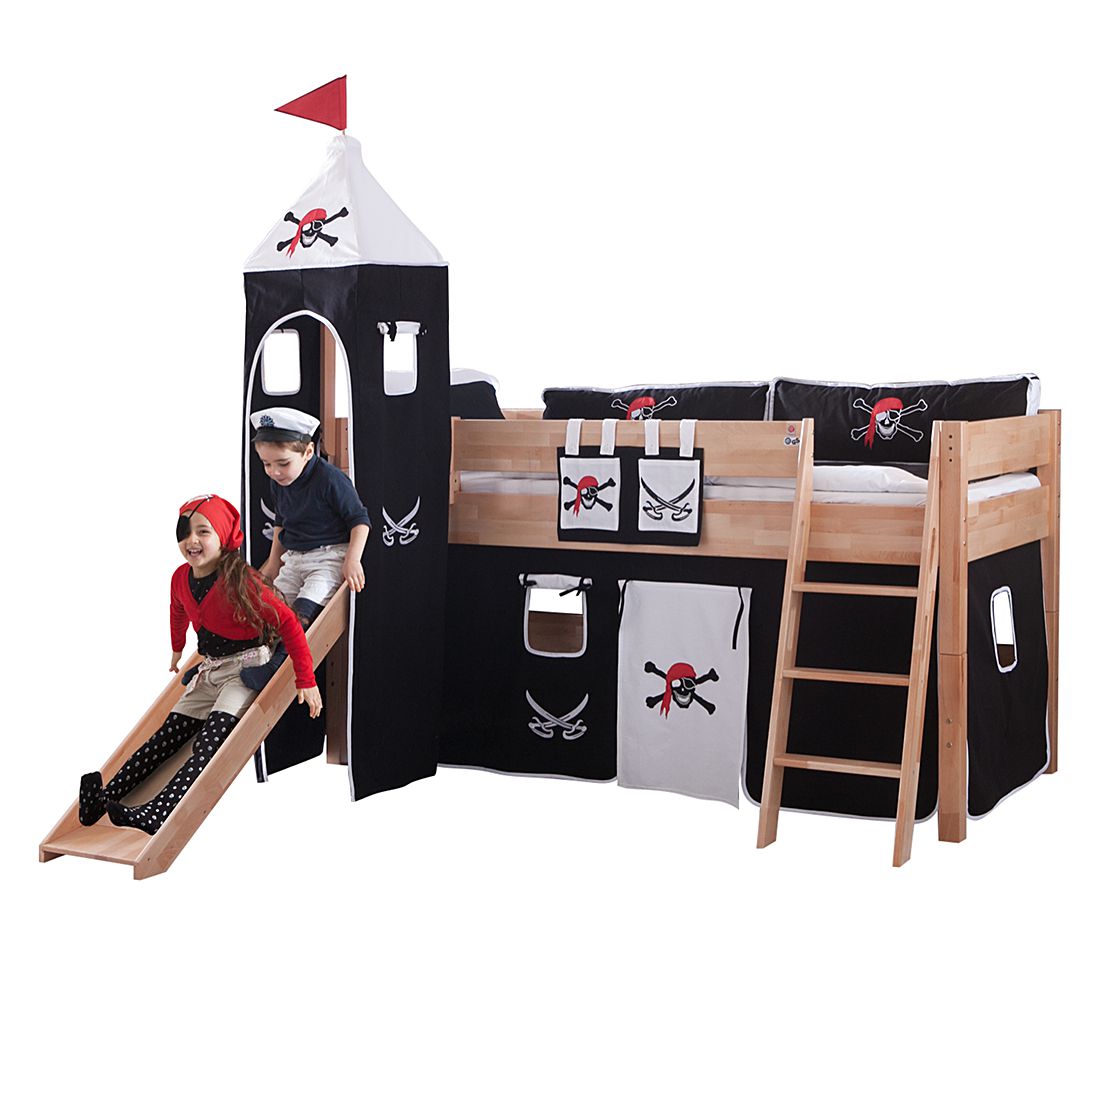 Spielbett Kim - Buche massiv lackiert - mit Rutsche, Turm und Textilset in Schwarz/Weiß, Relita